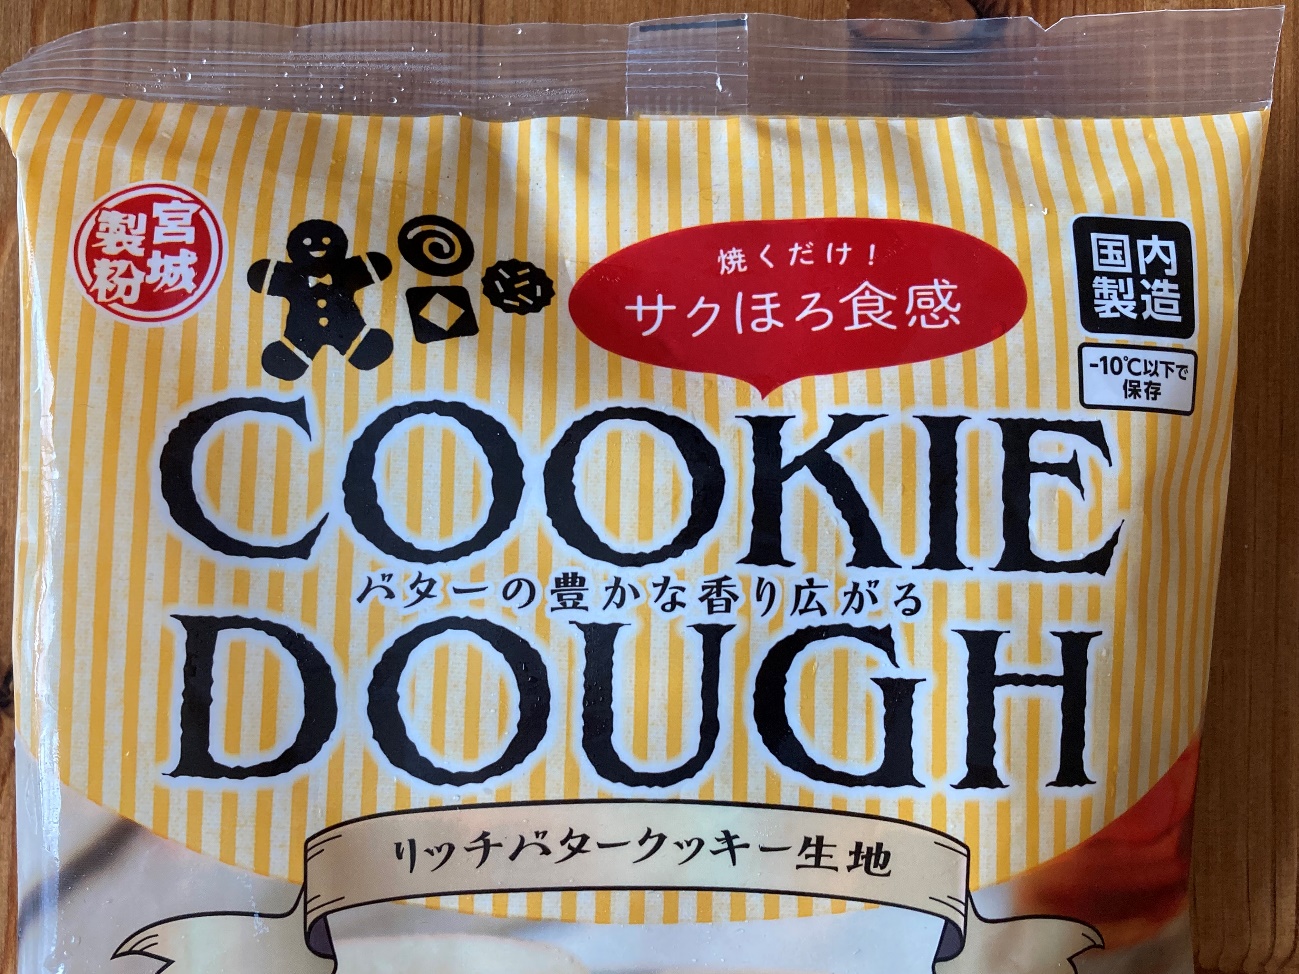 業務スーパーのリッチバタークッキー生地のパッケージに記載されている商品名